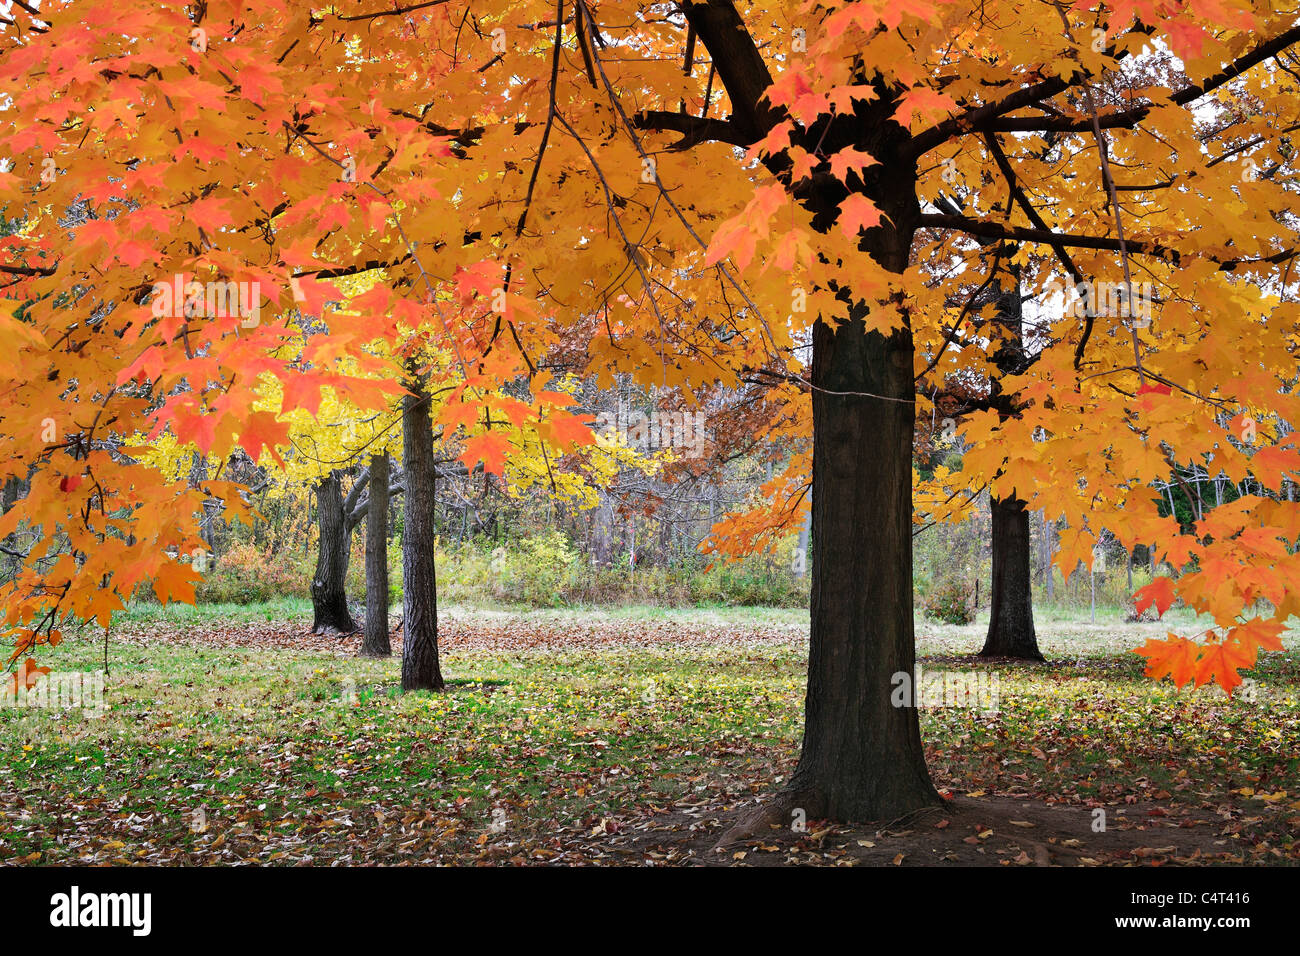 Des couleurs vibrantes produites lorsque la lumière passe à travers les feuilles d'automne sous un ciel couvert Journée Au Parc, le sud-ouest de l'Ohio, USA Banque D'Images